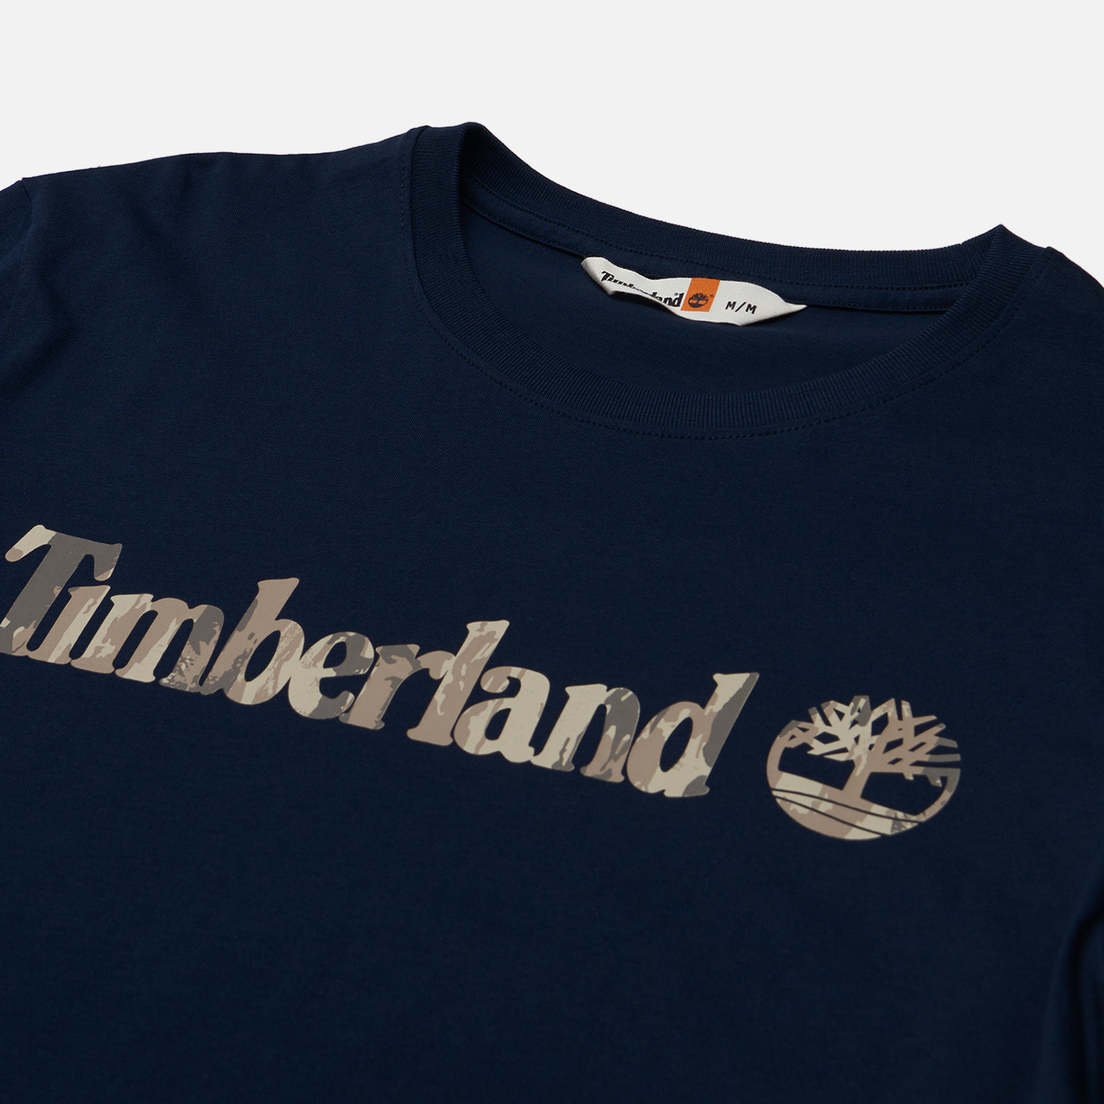 Timberland Мужская футболка Kennebec River Camo Linear Logo